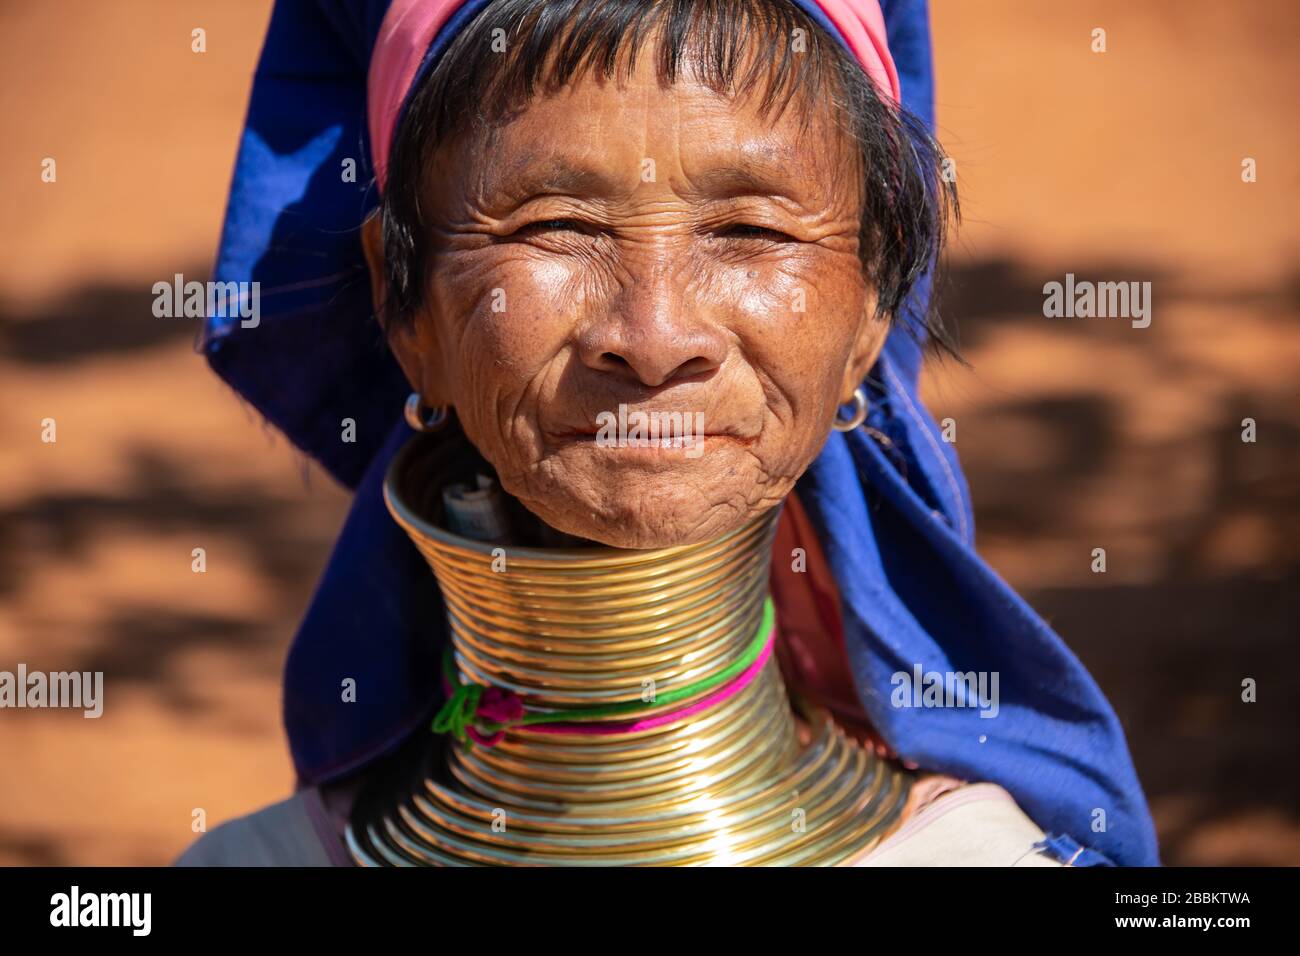 Pan PET, Etat de Kayah, Myanmar - Février 2020: Portrait d'une femme âgée de Kayan longneck ou Paduang portant des bagues de cou traditionnelles en laiton. Banque D'Images